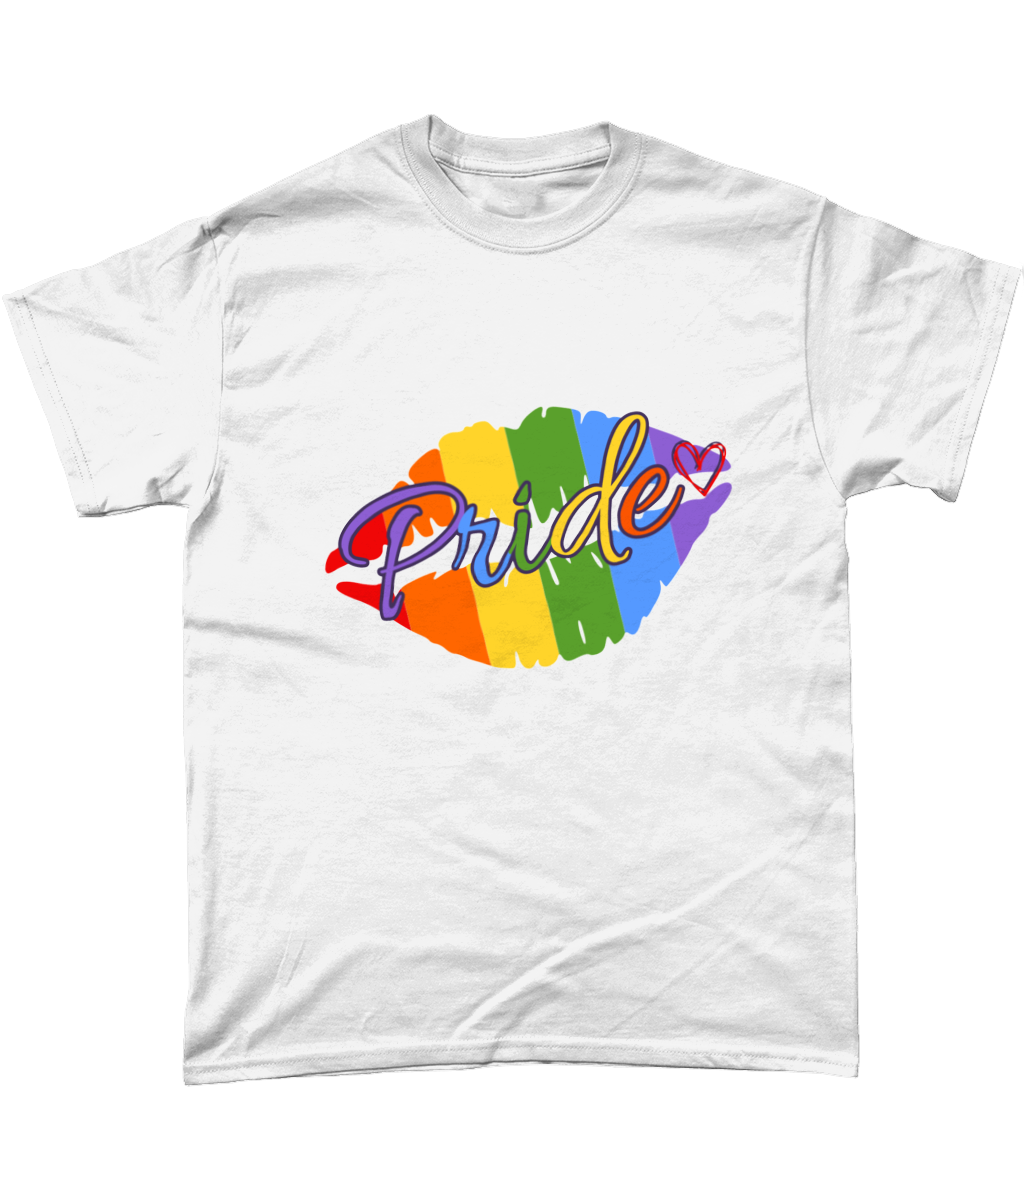 Gay pride lips LGBTQIA t-shirt